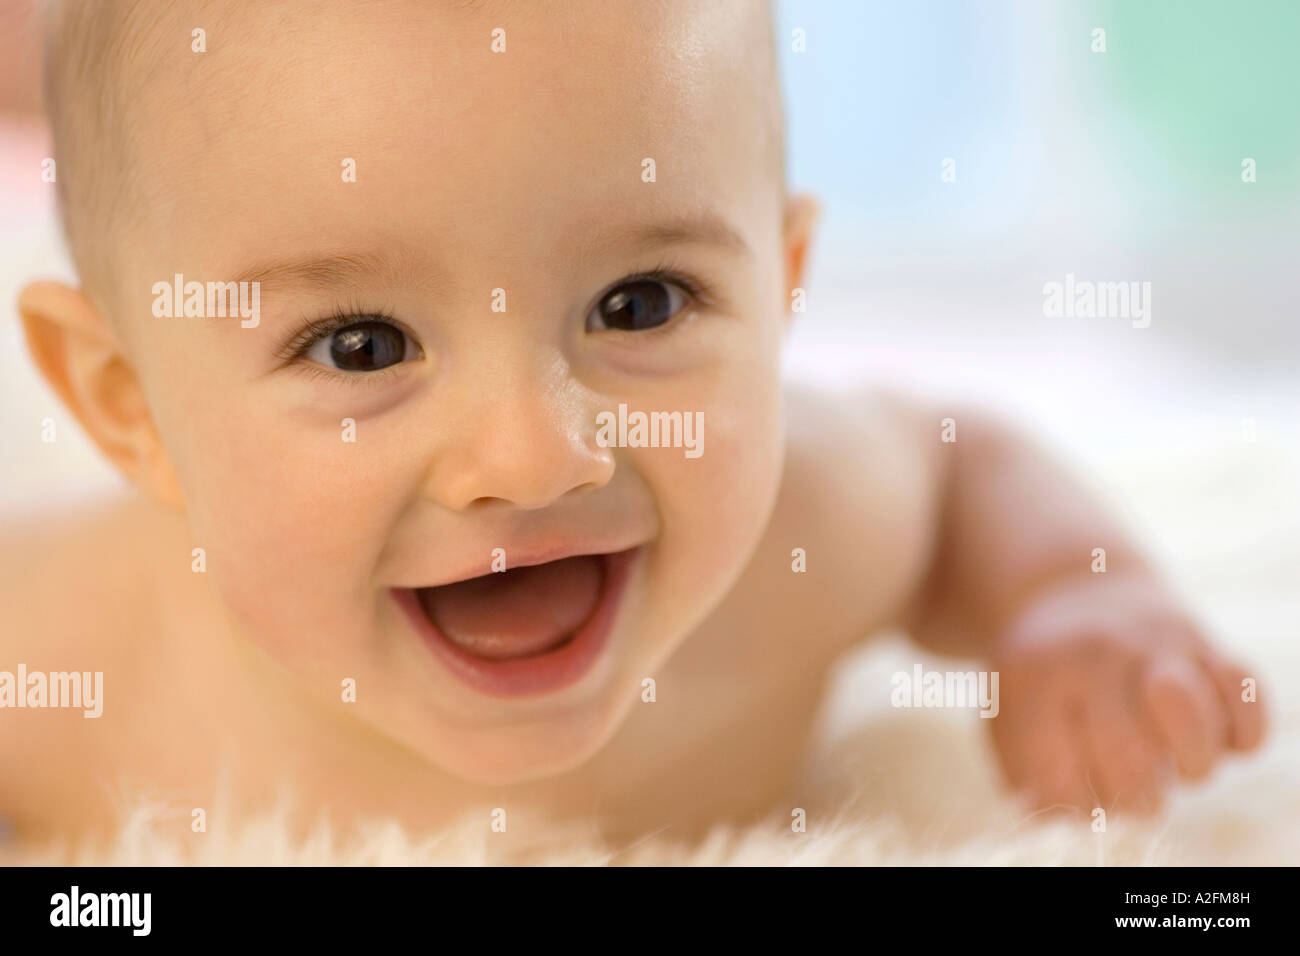 Bébé garçon (6-12 mois) allongé sur le ventre, smiling, close-up Banque D'Images